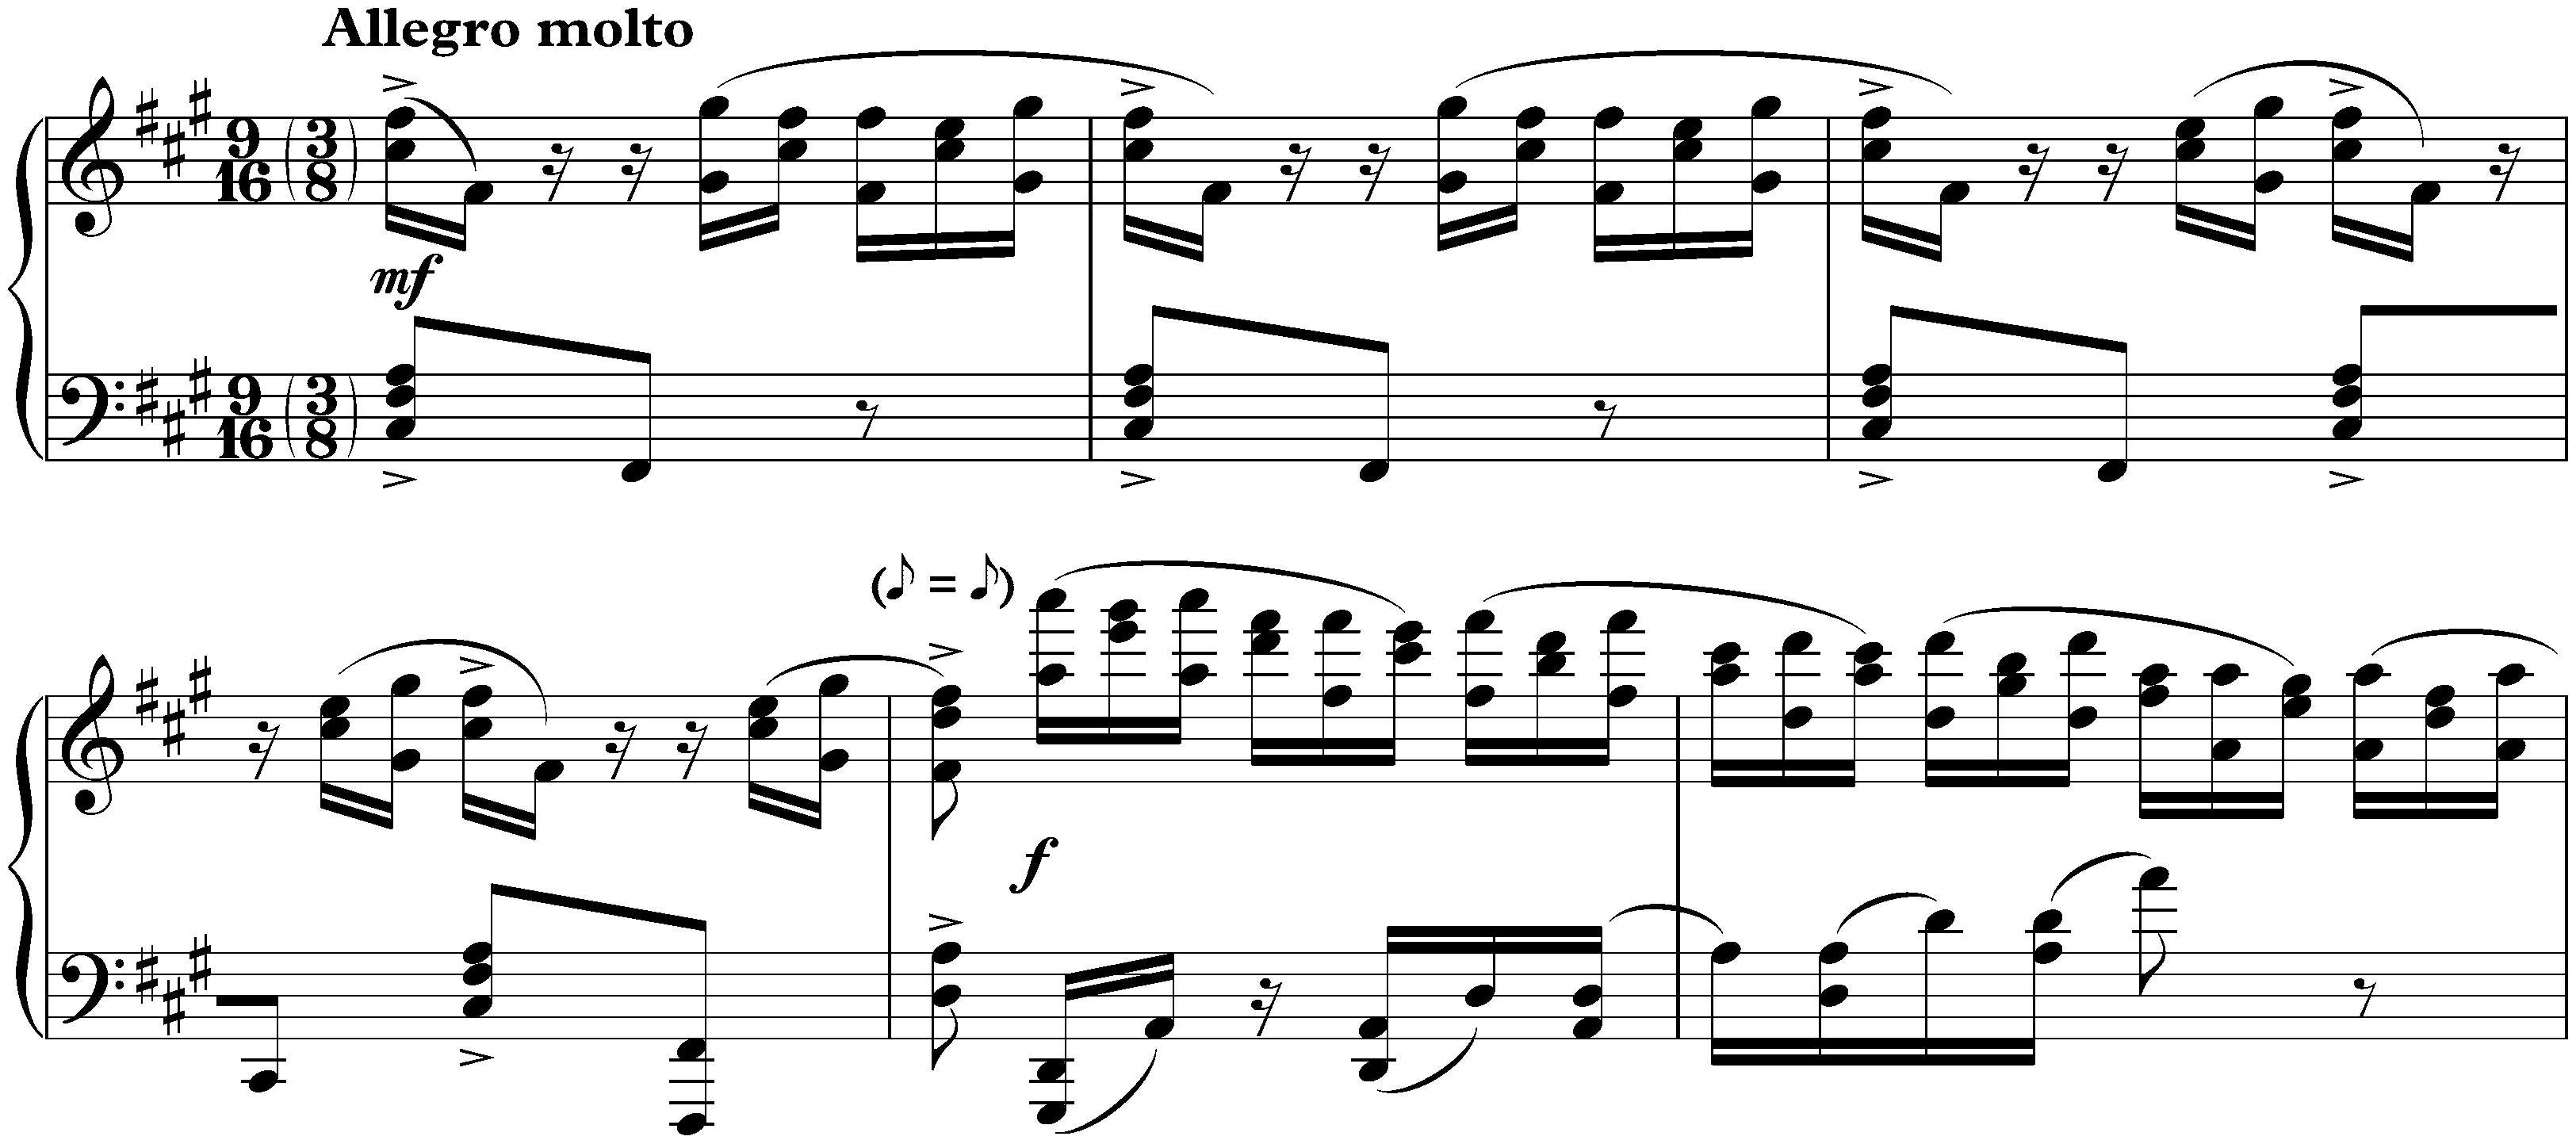 Études-tableaux, op. 39; 3. F-sharp minor